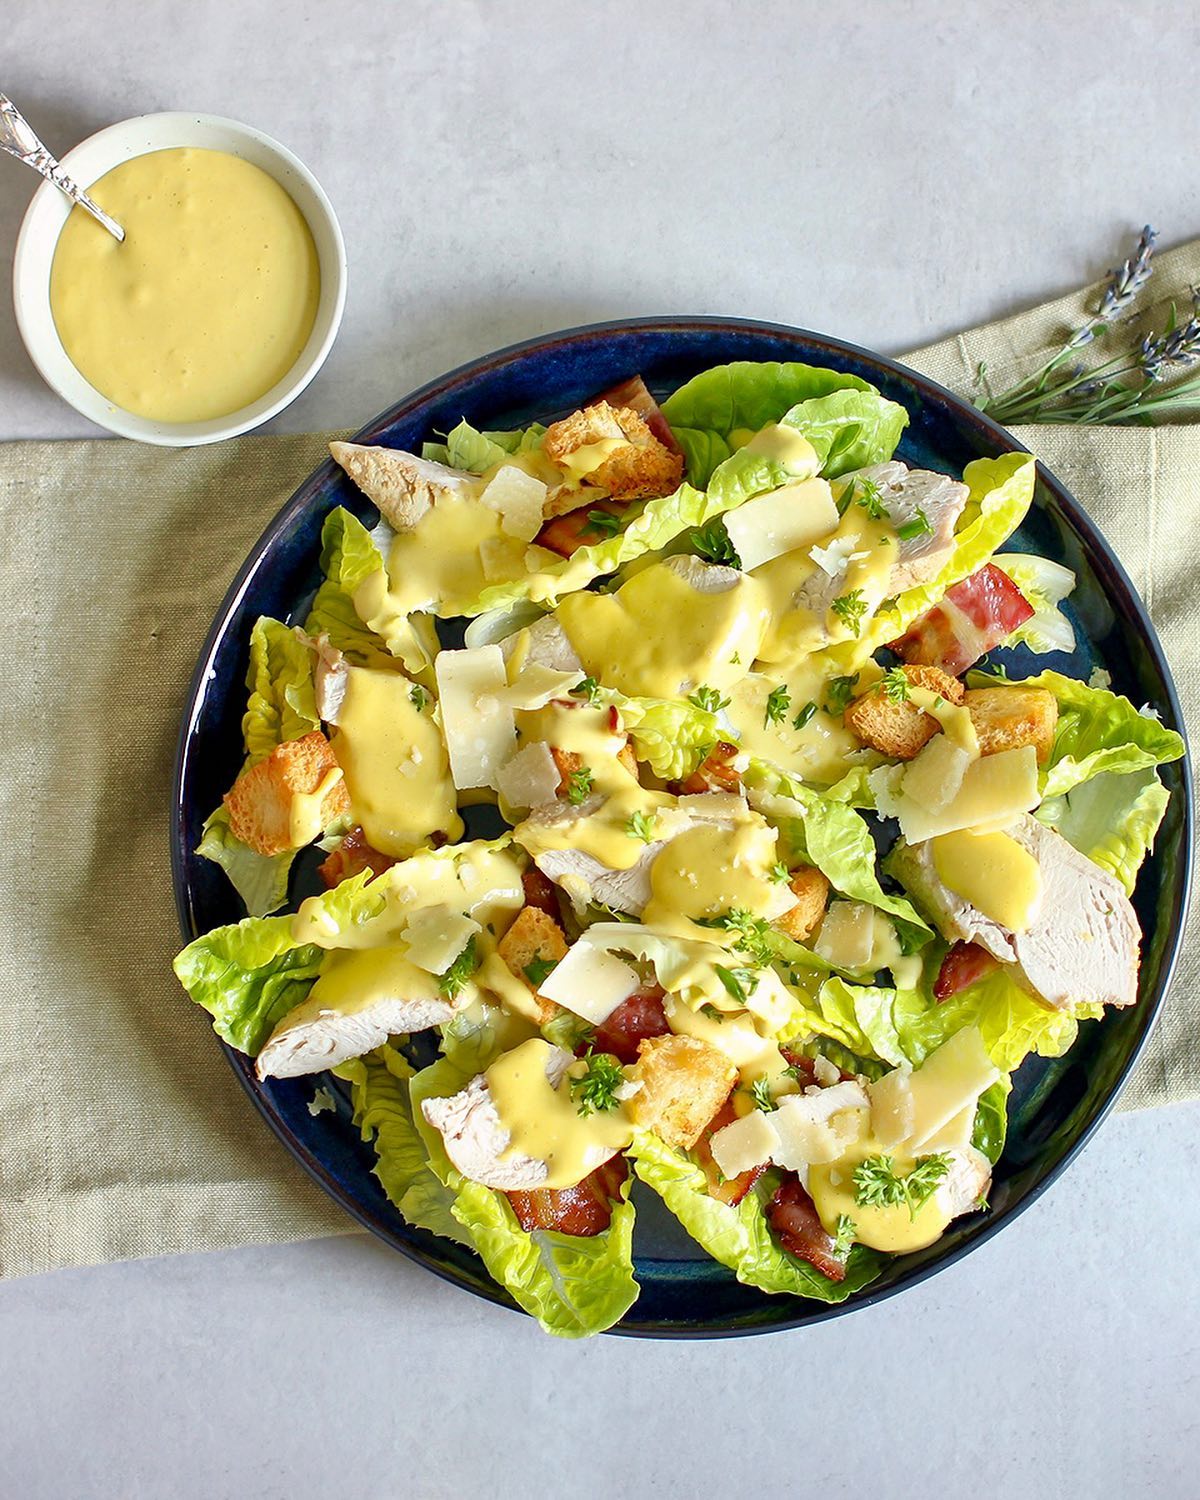 Cæsarsalat er en klassiker med god grunn. Jeg liker å posjerte kyllingen i en god kraft for at den skal bli ekstra saftig. Nydelig med sammen med sprø salat og kremet dressing ❤️

Oppskrift i bio og på matminner.com 👉 @matminner 

#salat #lunsj #hjemmekontor #5omdagen #merav #matprat #matbloggsentralen #kylling #godtno #cæsarsalat #middagstips #matminner